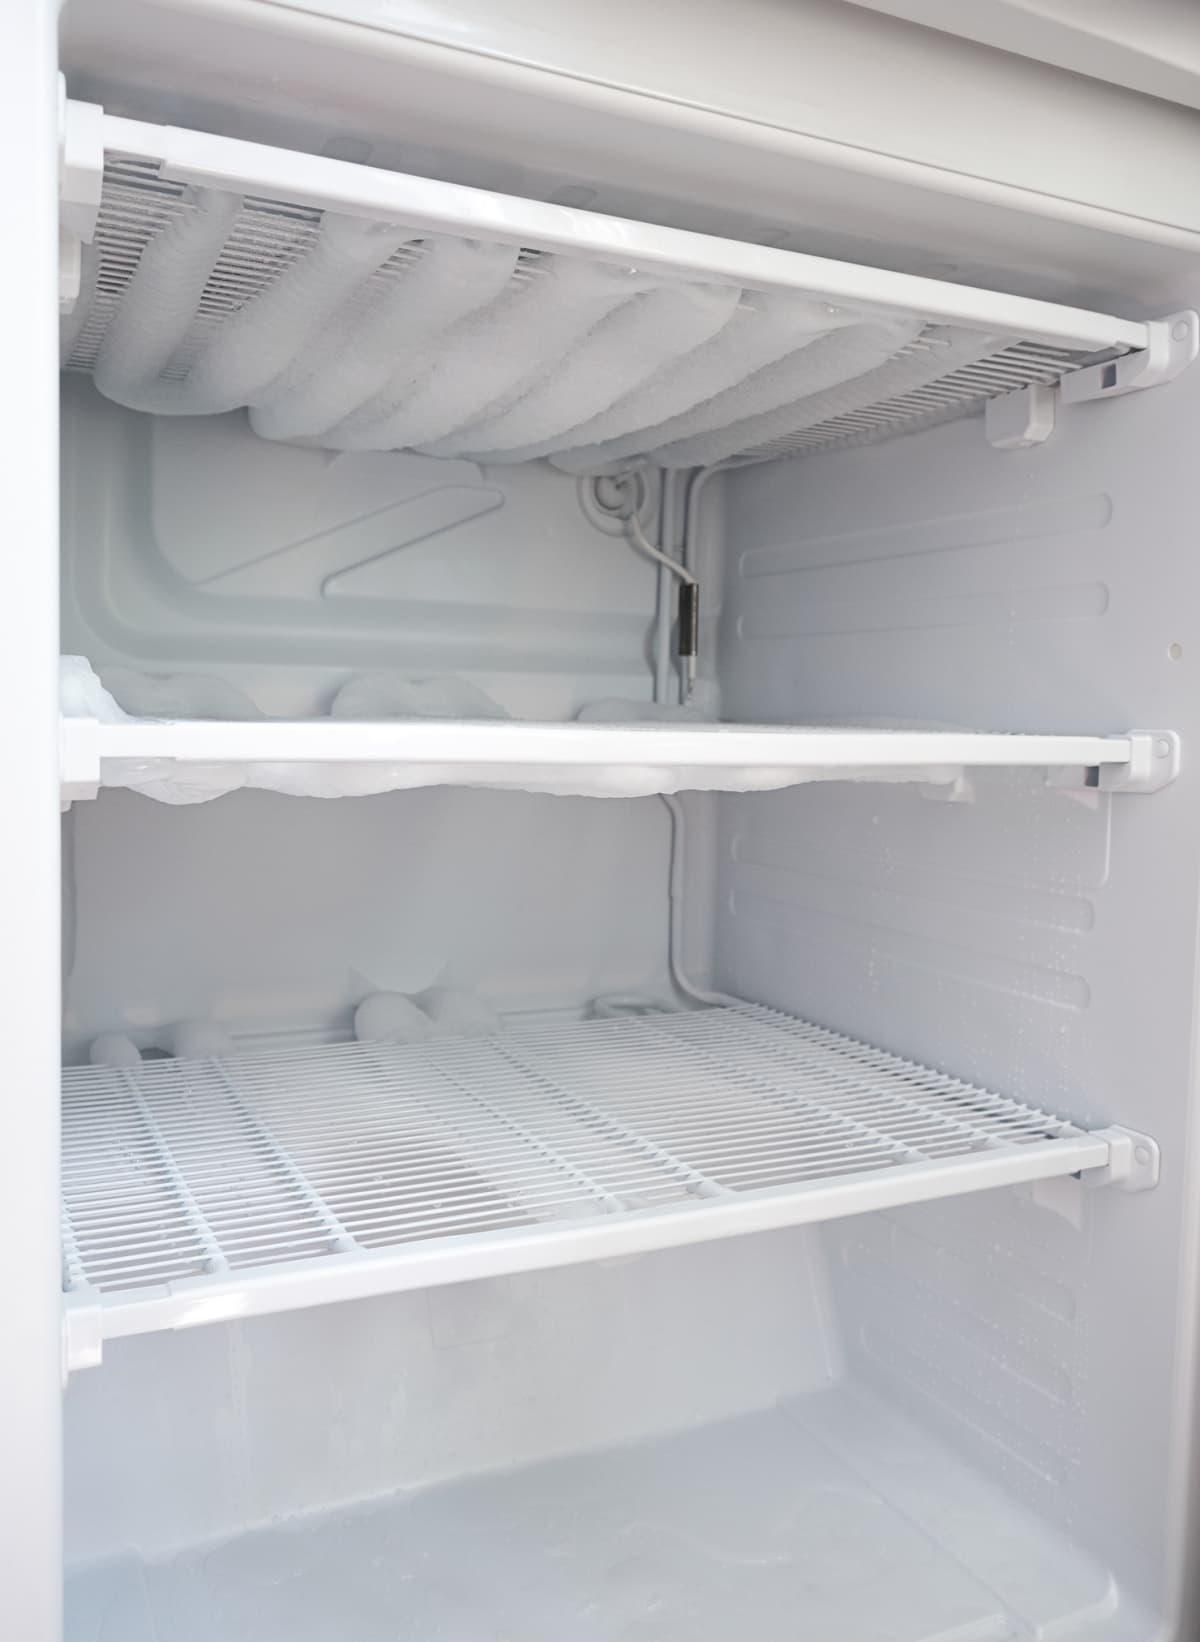 broken fridge, snow on freezer shelves, defrosting the fridge